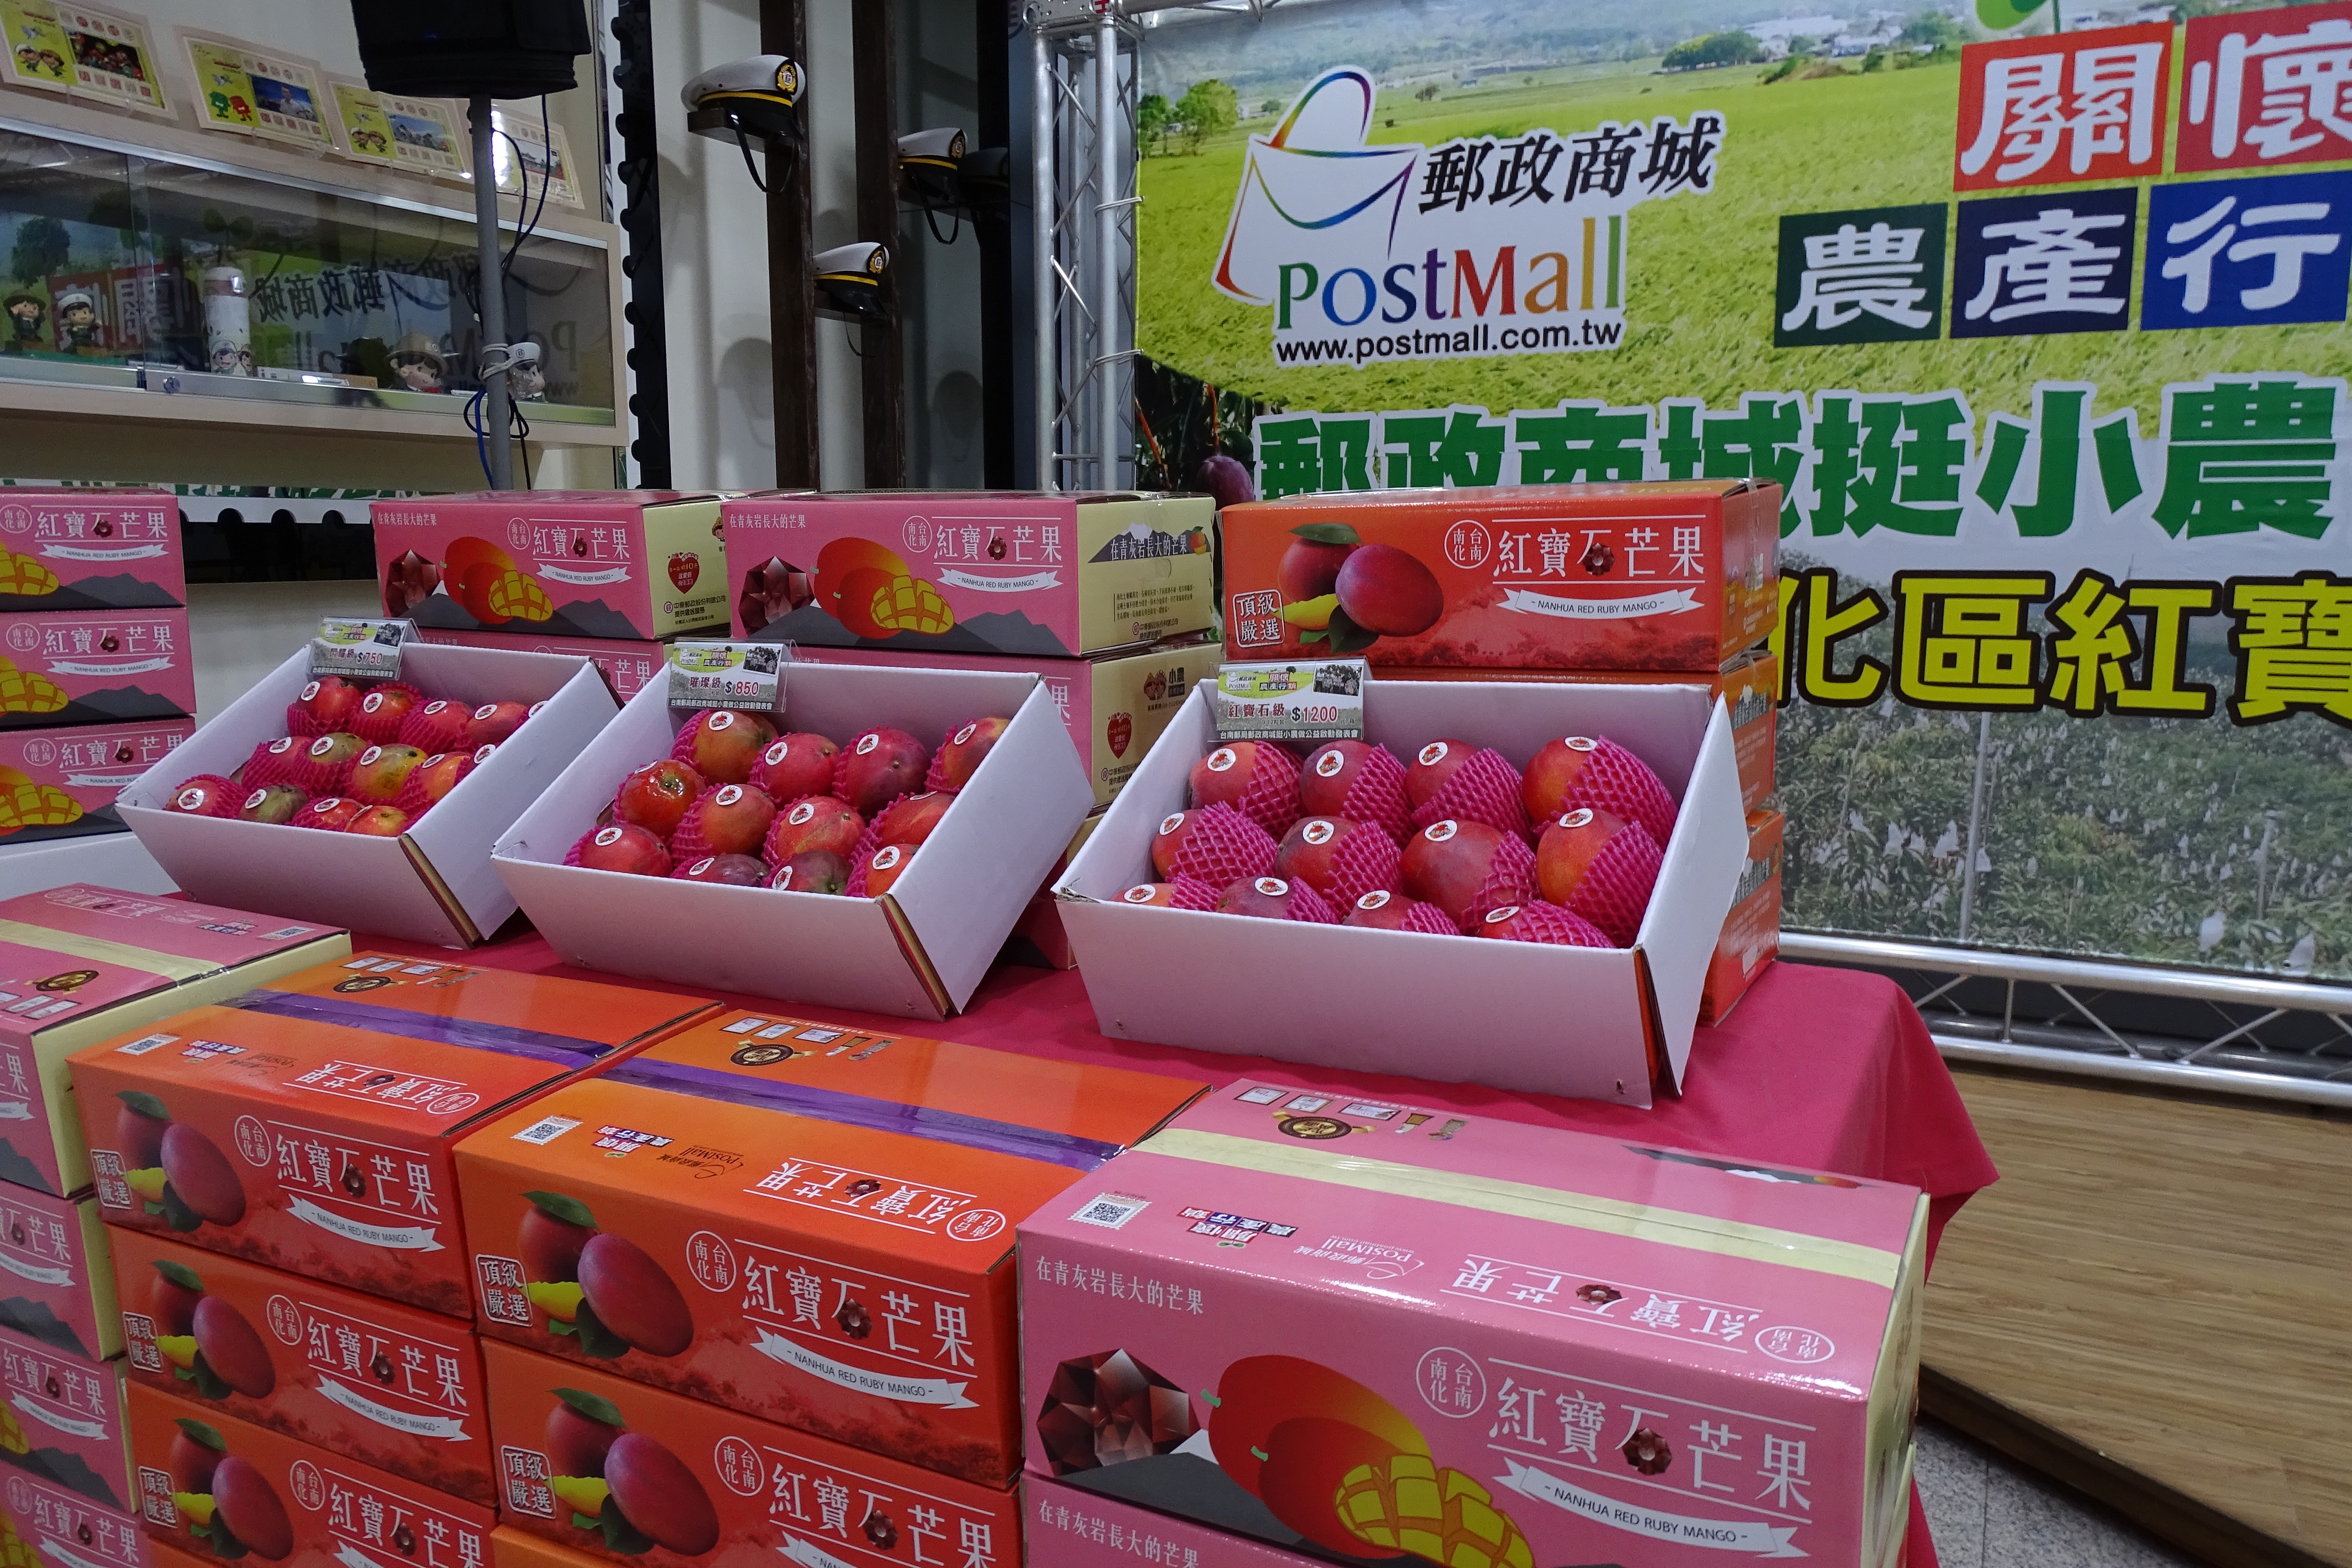 臺南郵局關懷農產行銷挺小農做公益記者會-紅寶石愛文芒果」上市